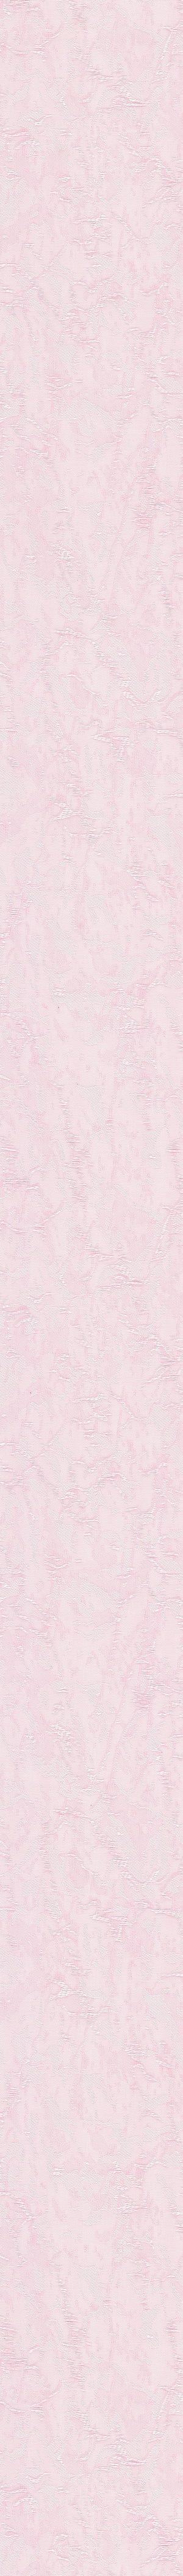 Ткань-Шёлк-розовый